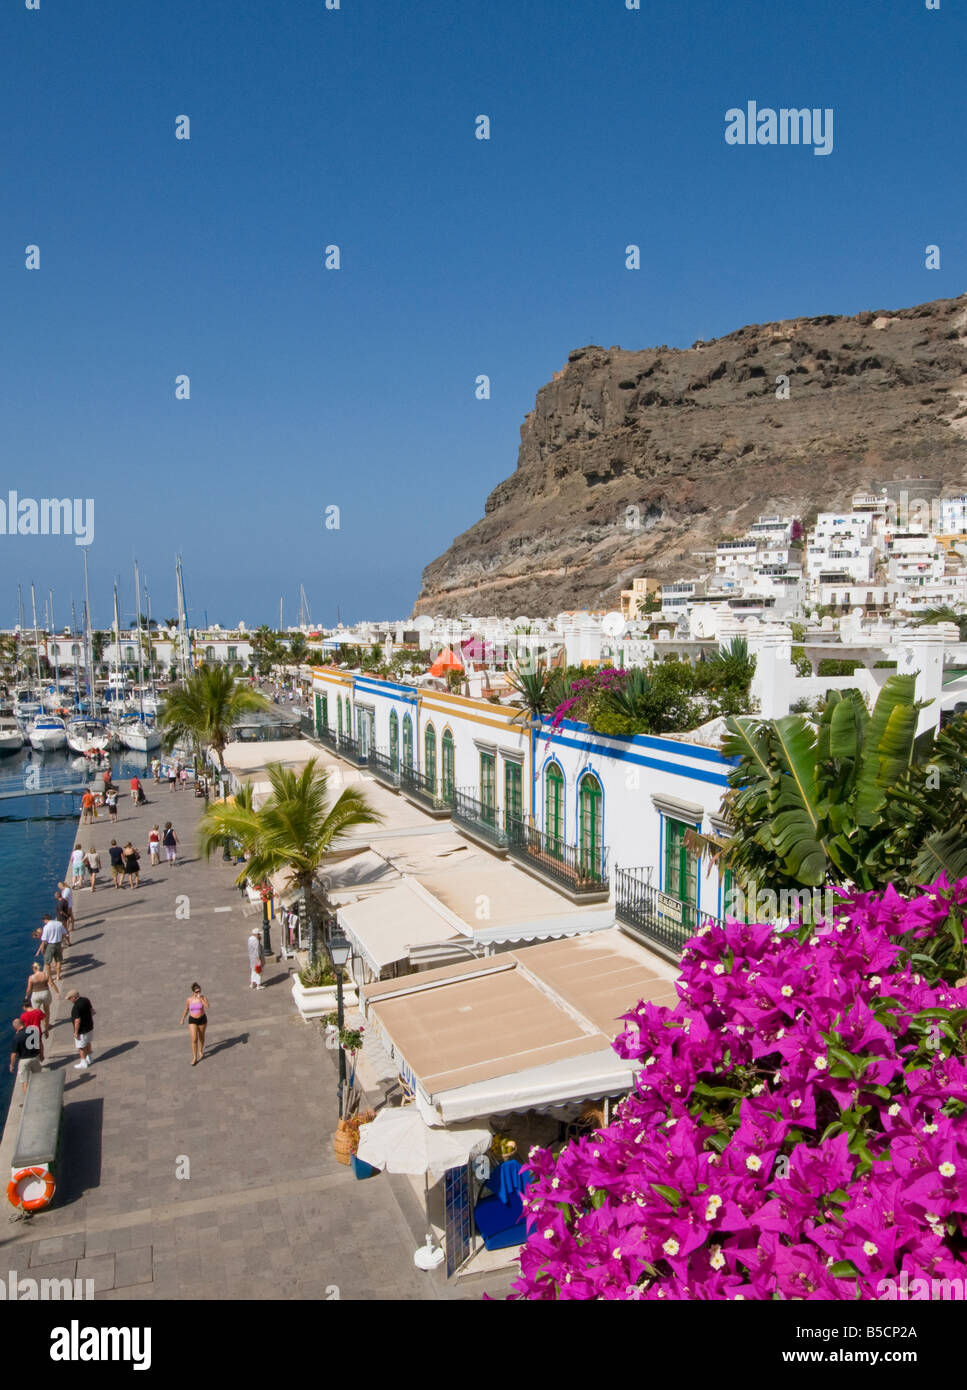 Puerto de Mogan Blick über Luxus-Hafen, Promenade und Restaurants in Puerto de Mogan Gran Canaria Kanaren Spanien Stockfoto